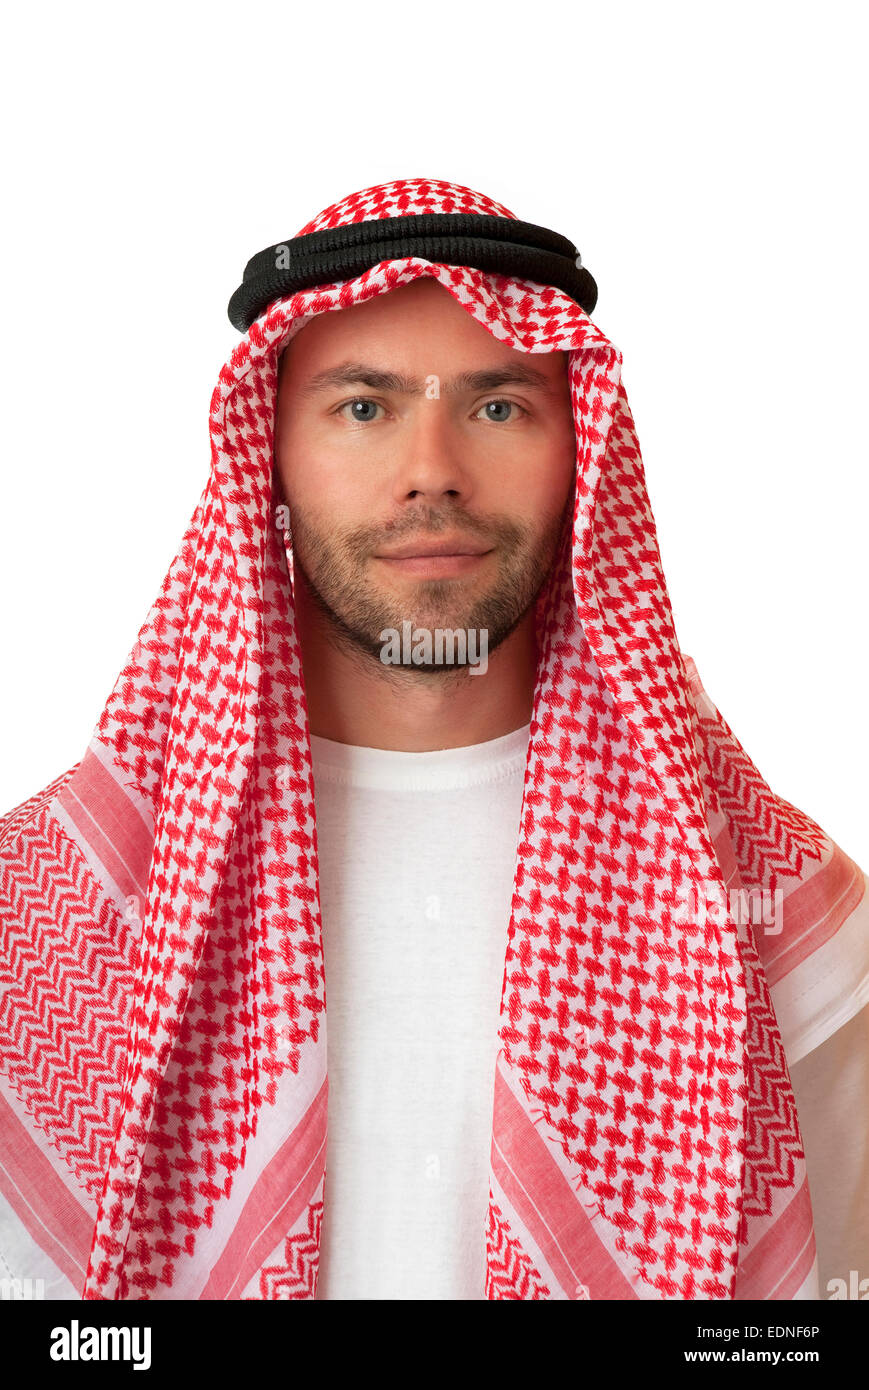 Mann in arabische Kopfbedeckung Stockfotografie - Alamy